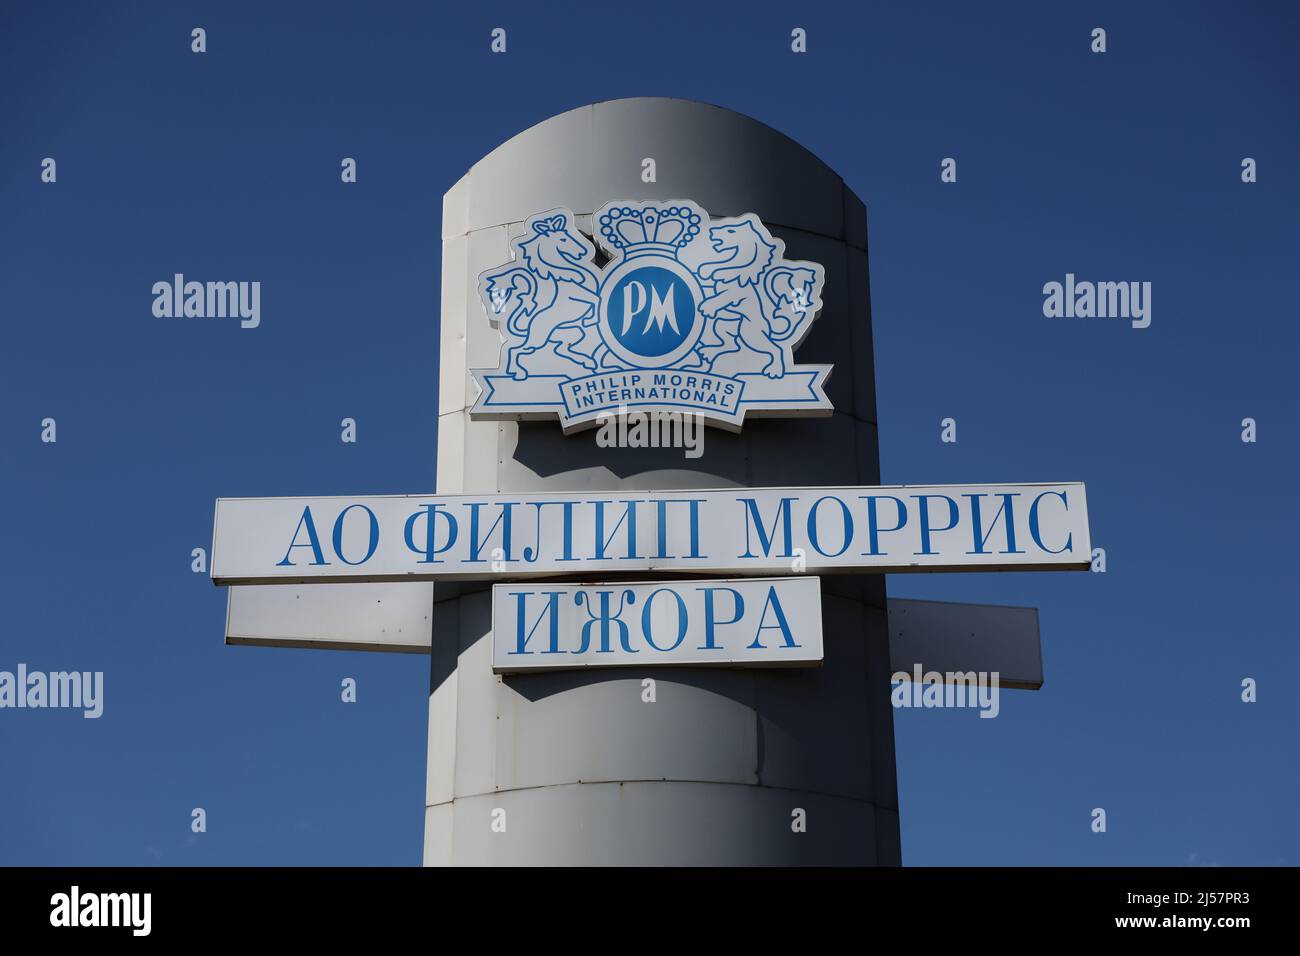 Le logo de la société est visible près de l'usine Philip Morris Izhora, à l'extérieur de Saint-Pétersbourg, en Russie, le 9 avril 2022. Photo prise le 9 avril 2022. Pour faire correspondre le rapport spécial UKRAINE-CRISE/PHILIPMORRIS-GUNS. PHOTOGRAPHE REUTERS/REUTERS Banque D'Images